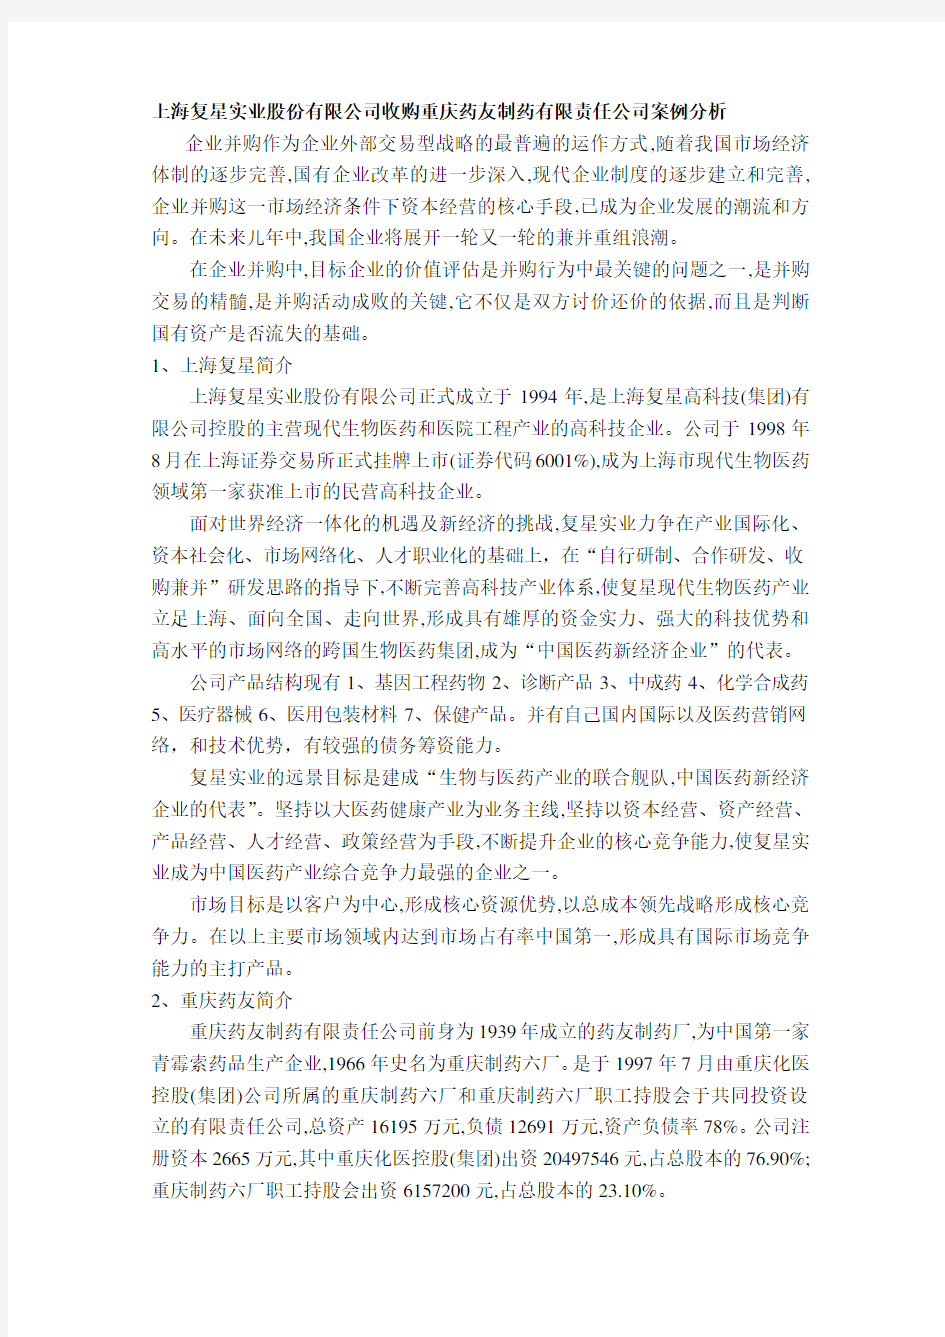 上海复星并购重庆药友的案例研究